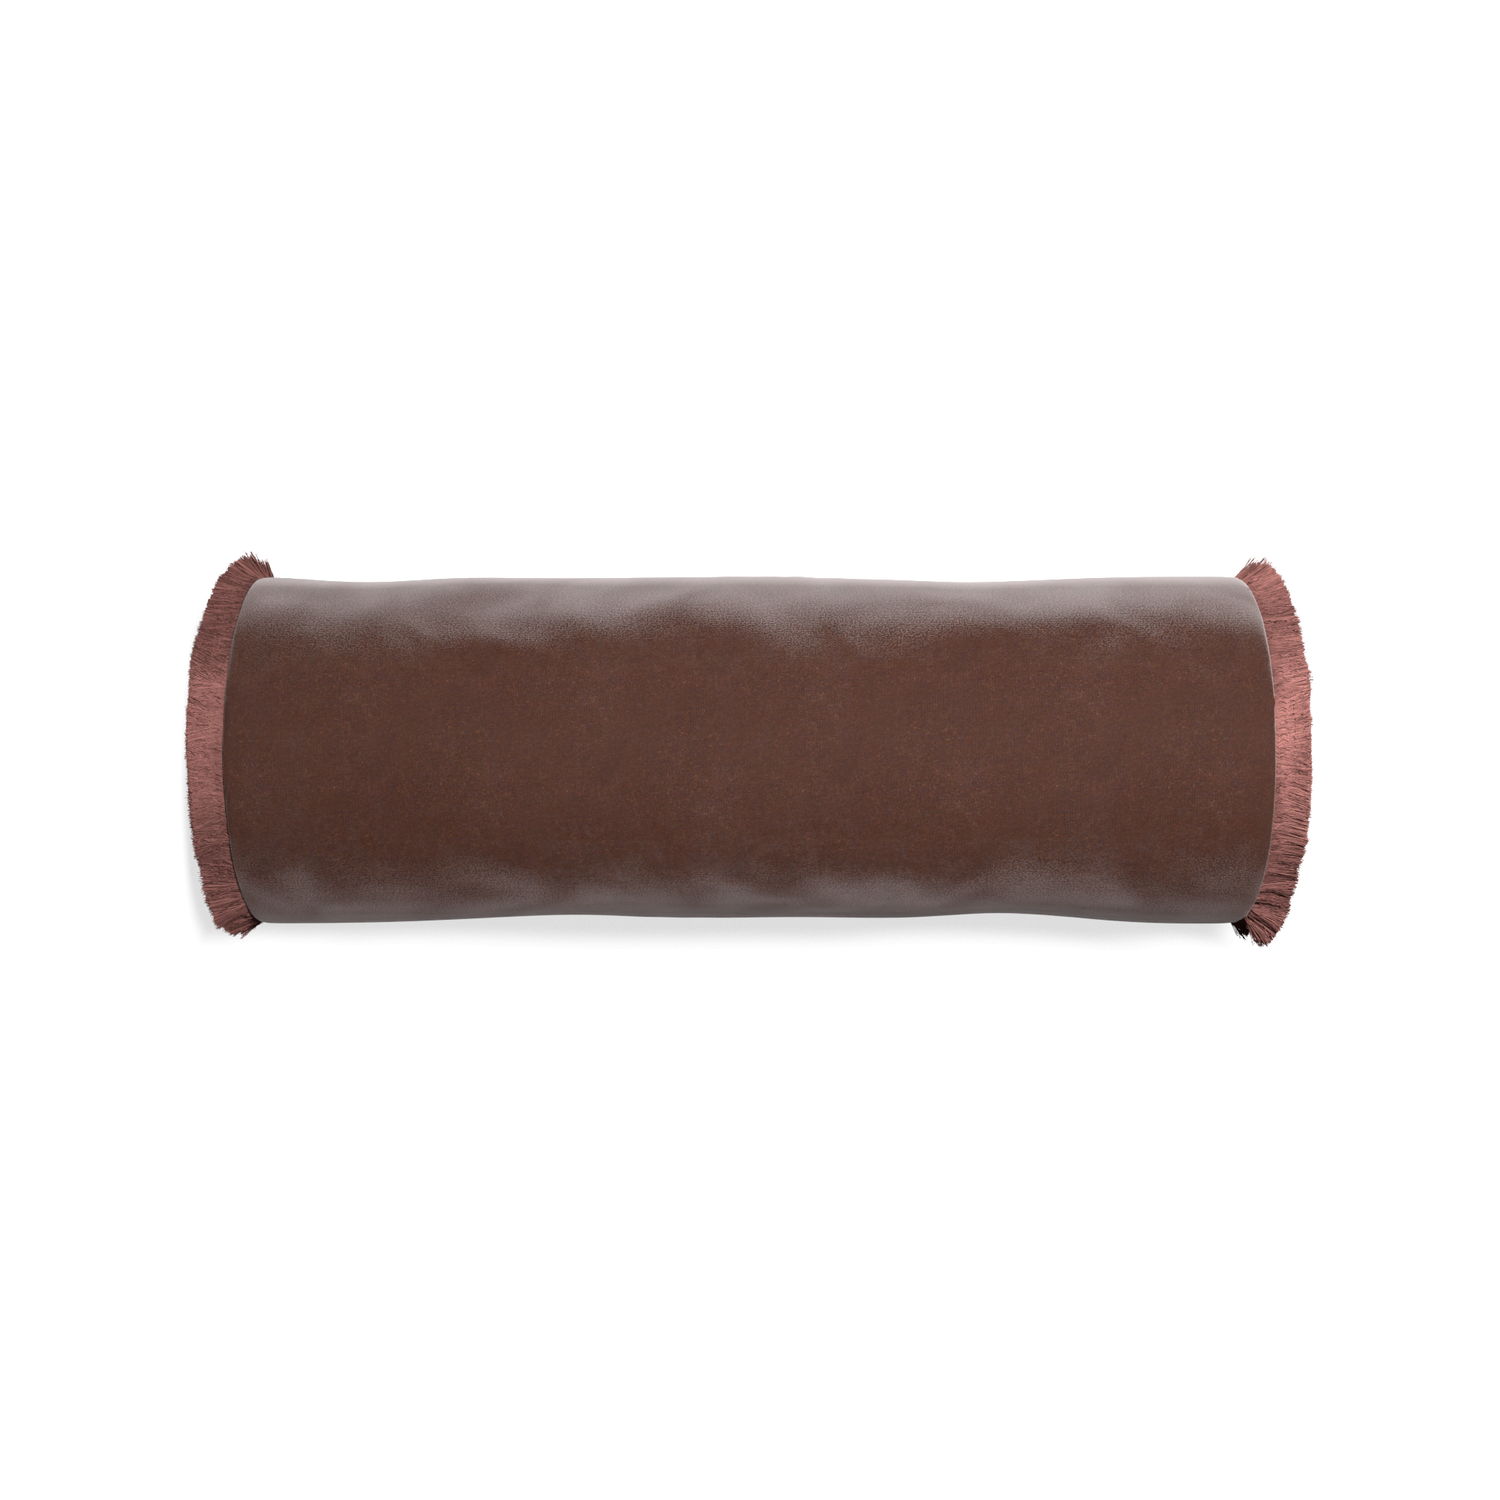 bolster brown velvet pillow with dusty rose fringe